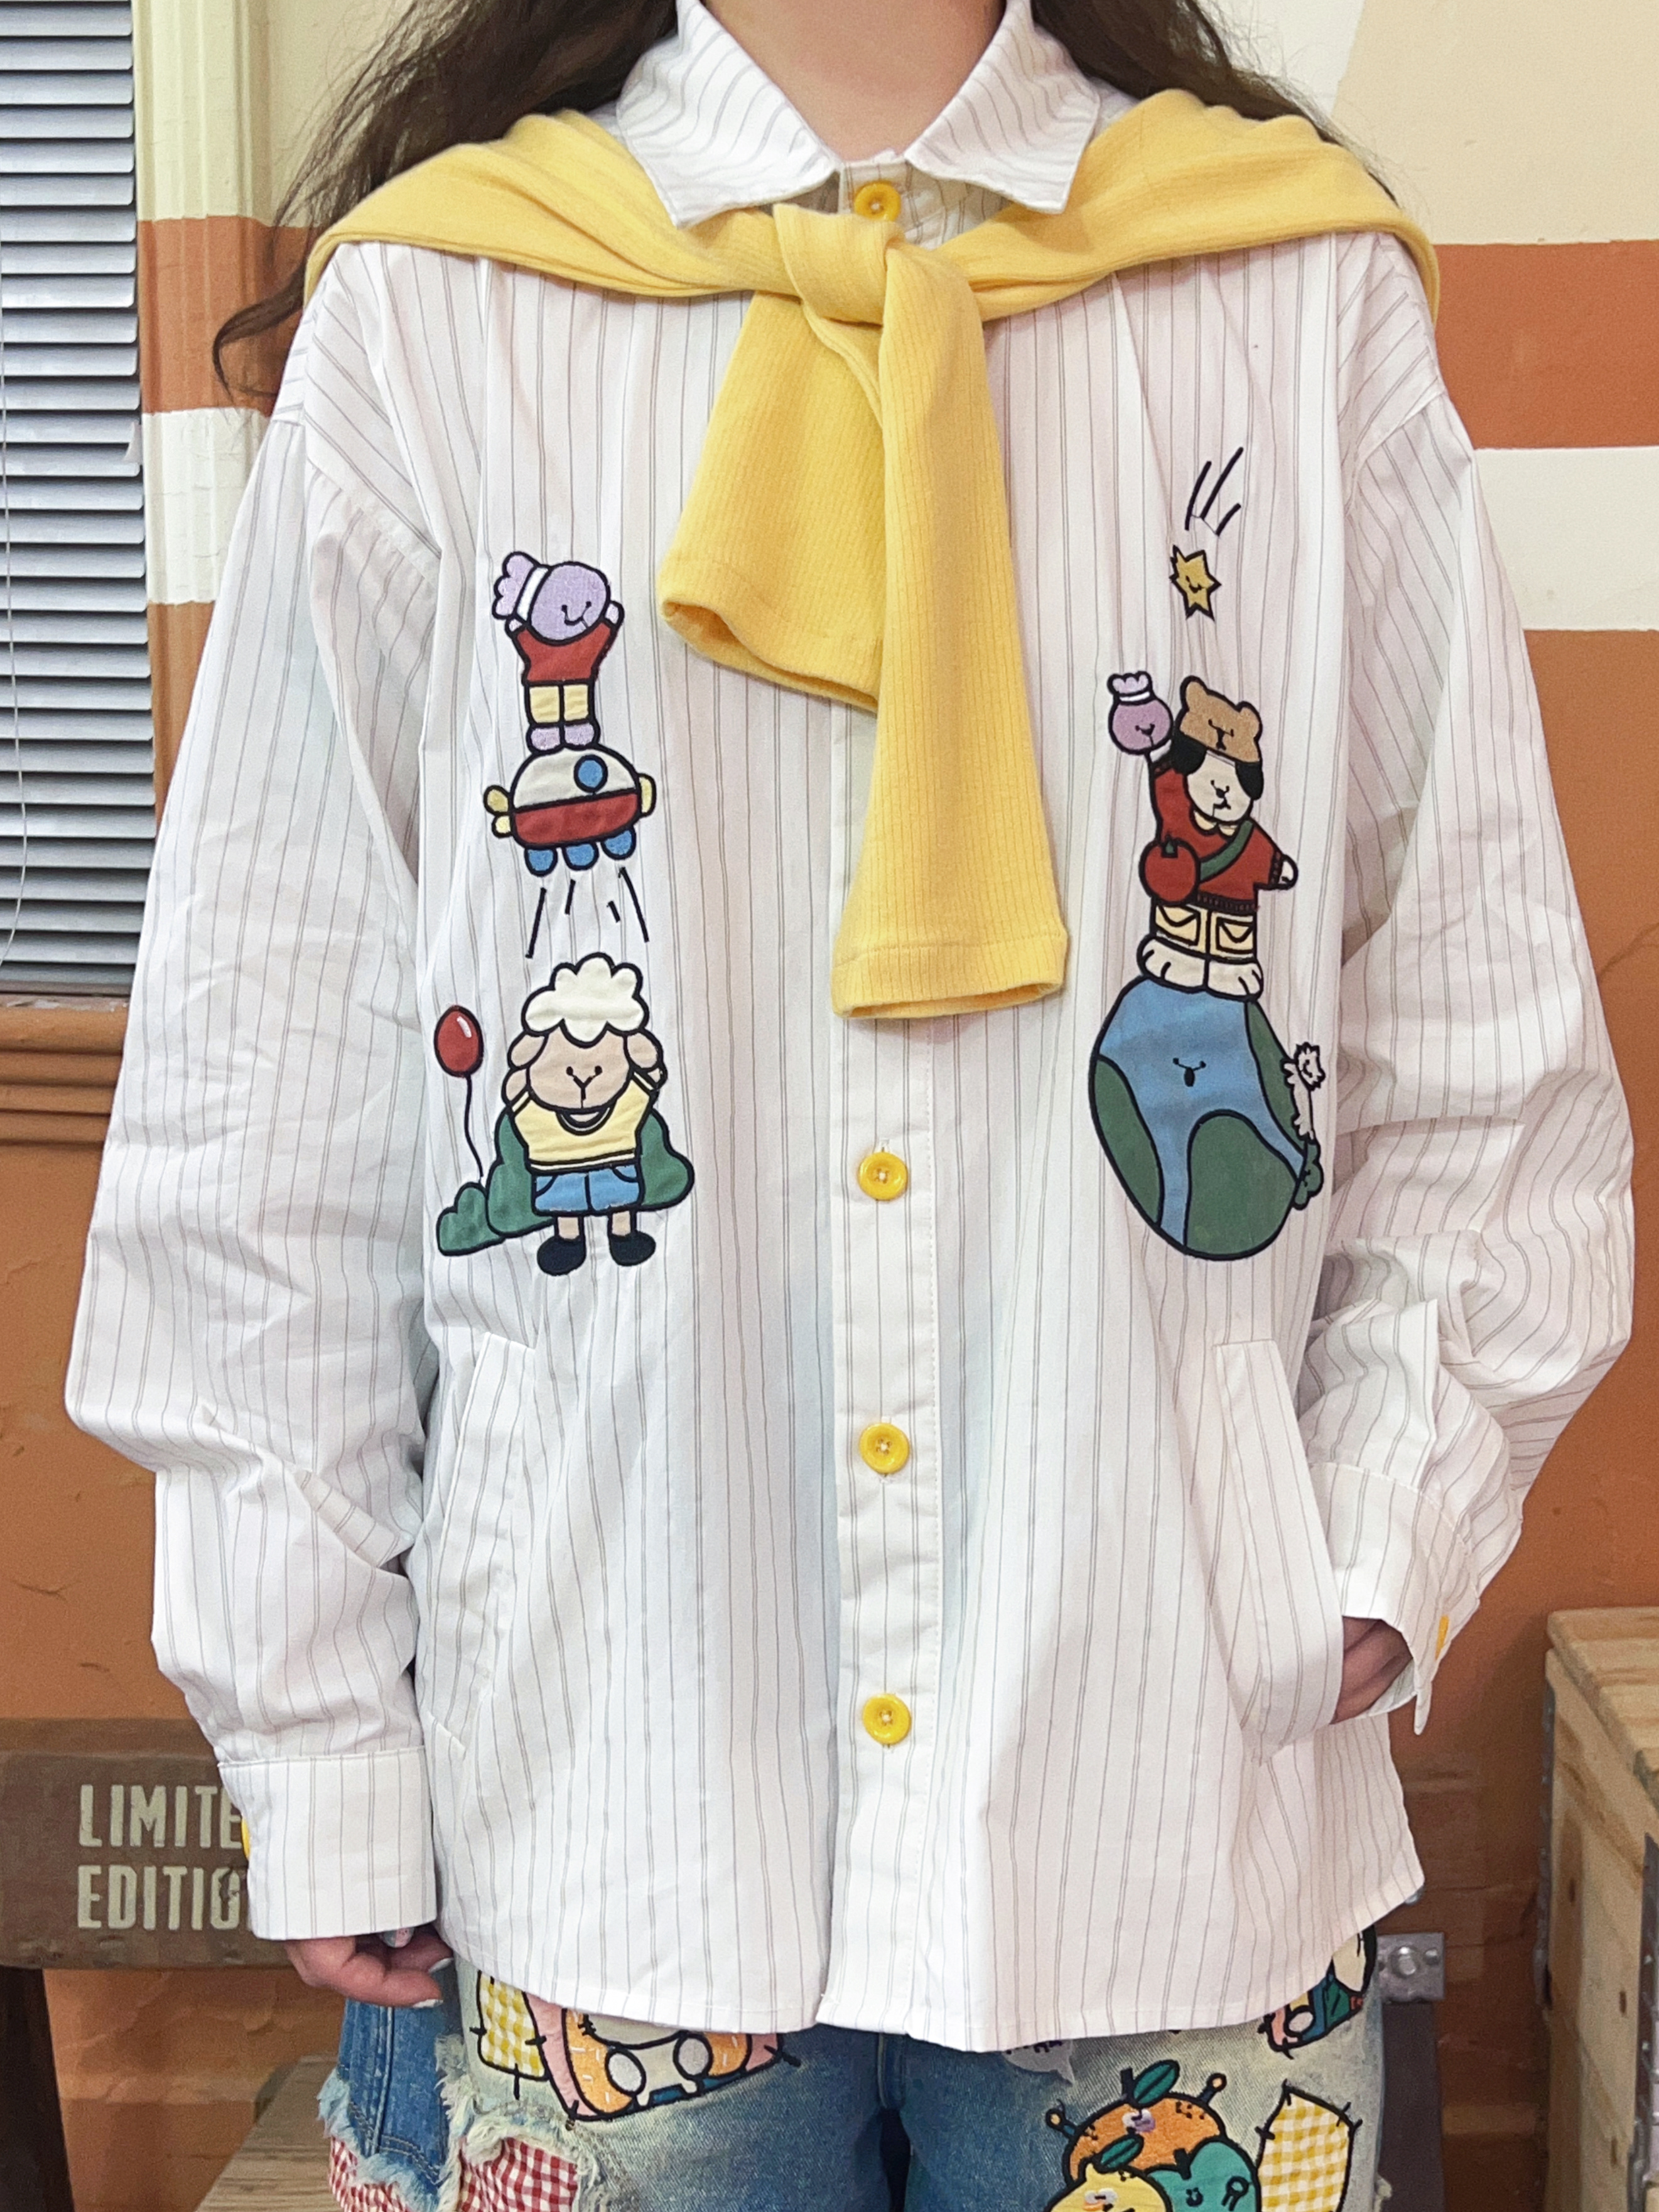 Robootoo 原创可爱童趣古着小众日系全棉卡通刺绣披肩短袖白衬衫